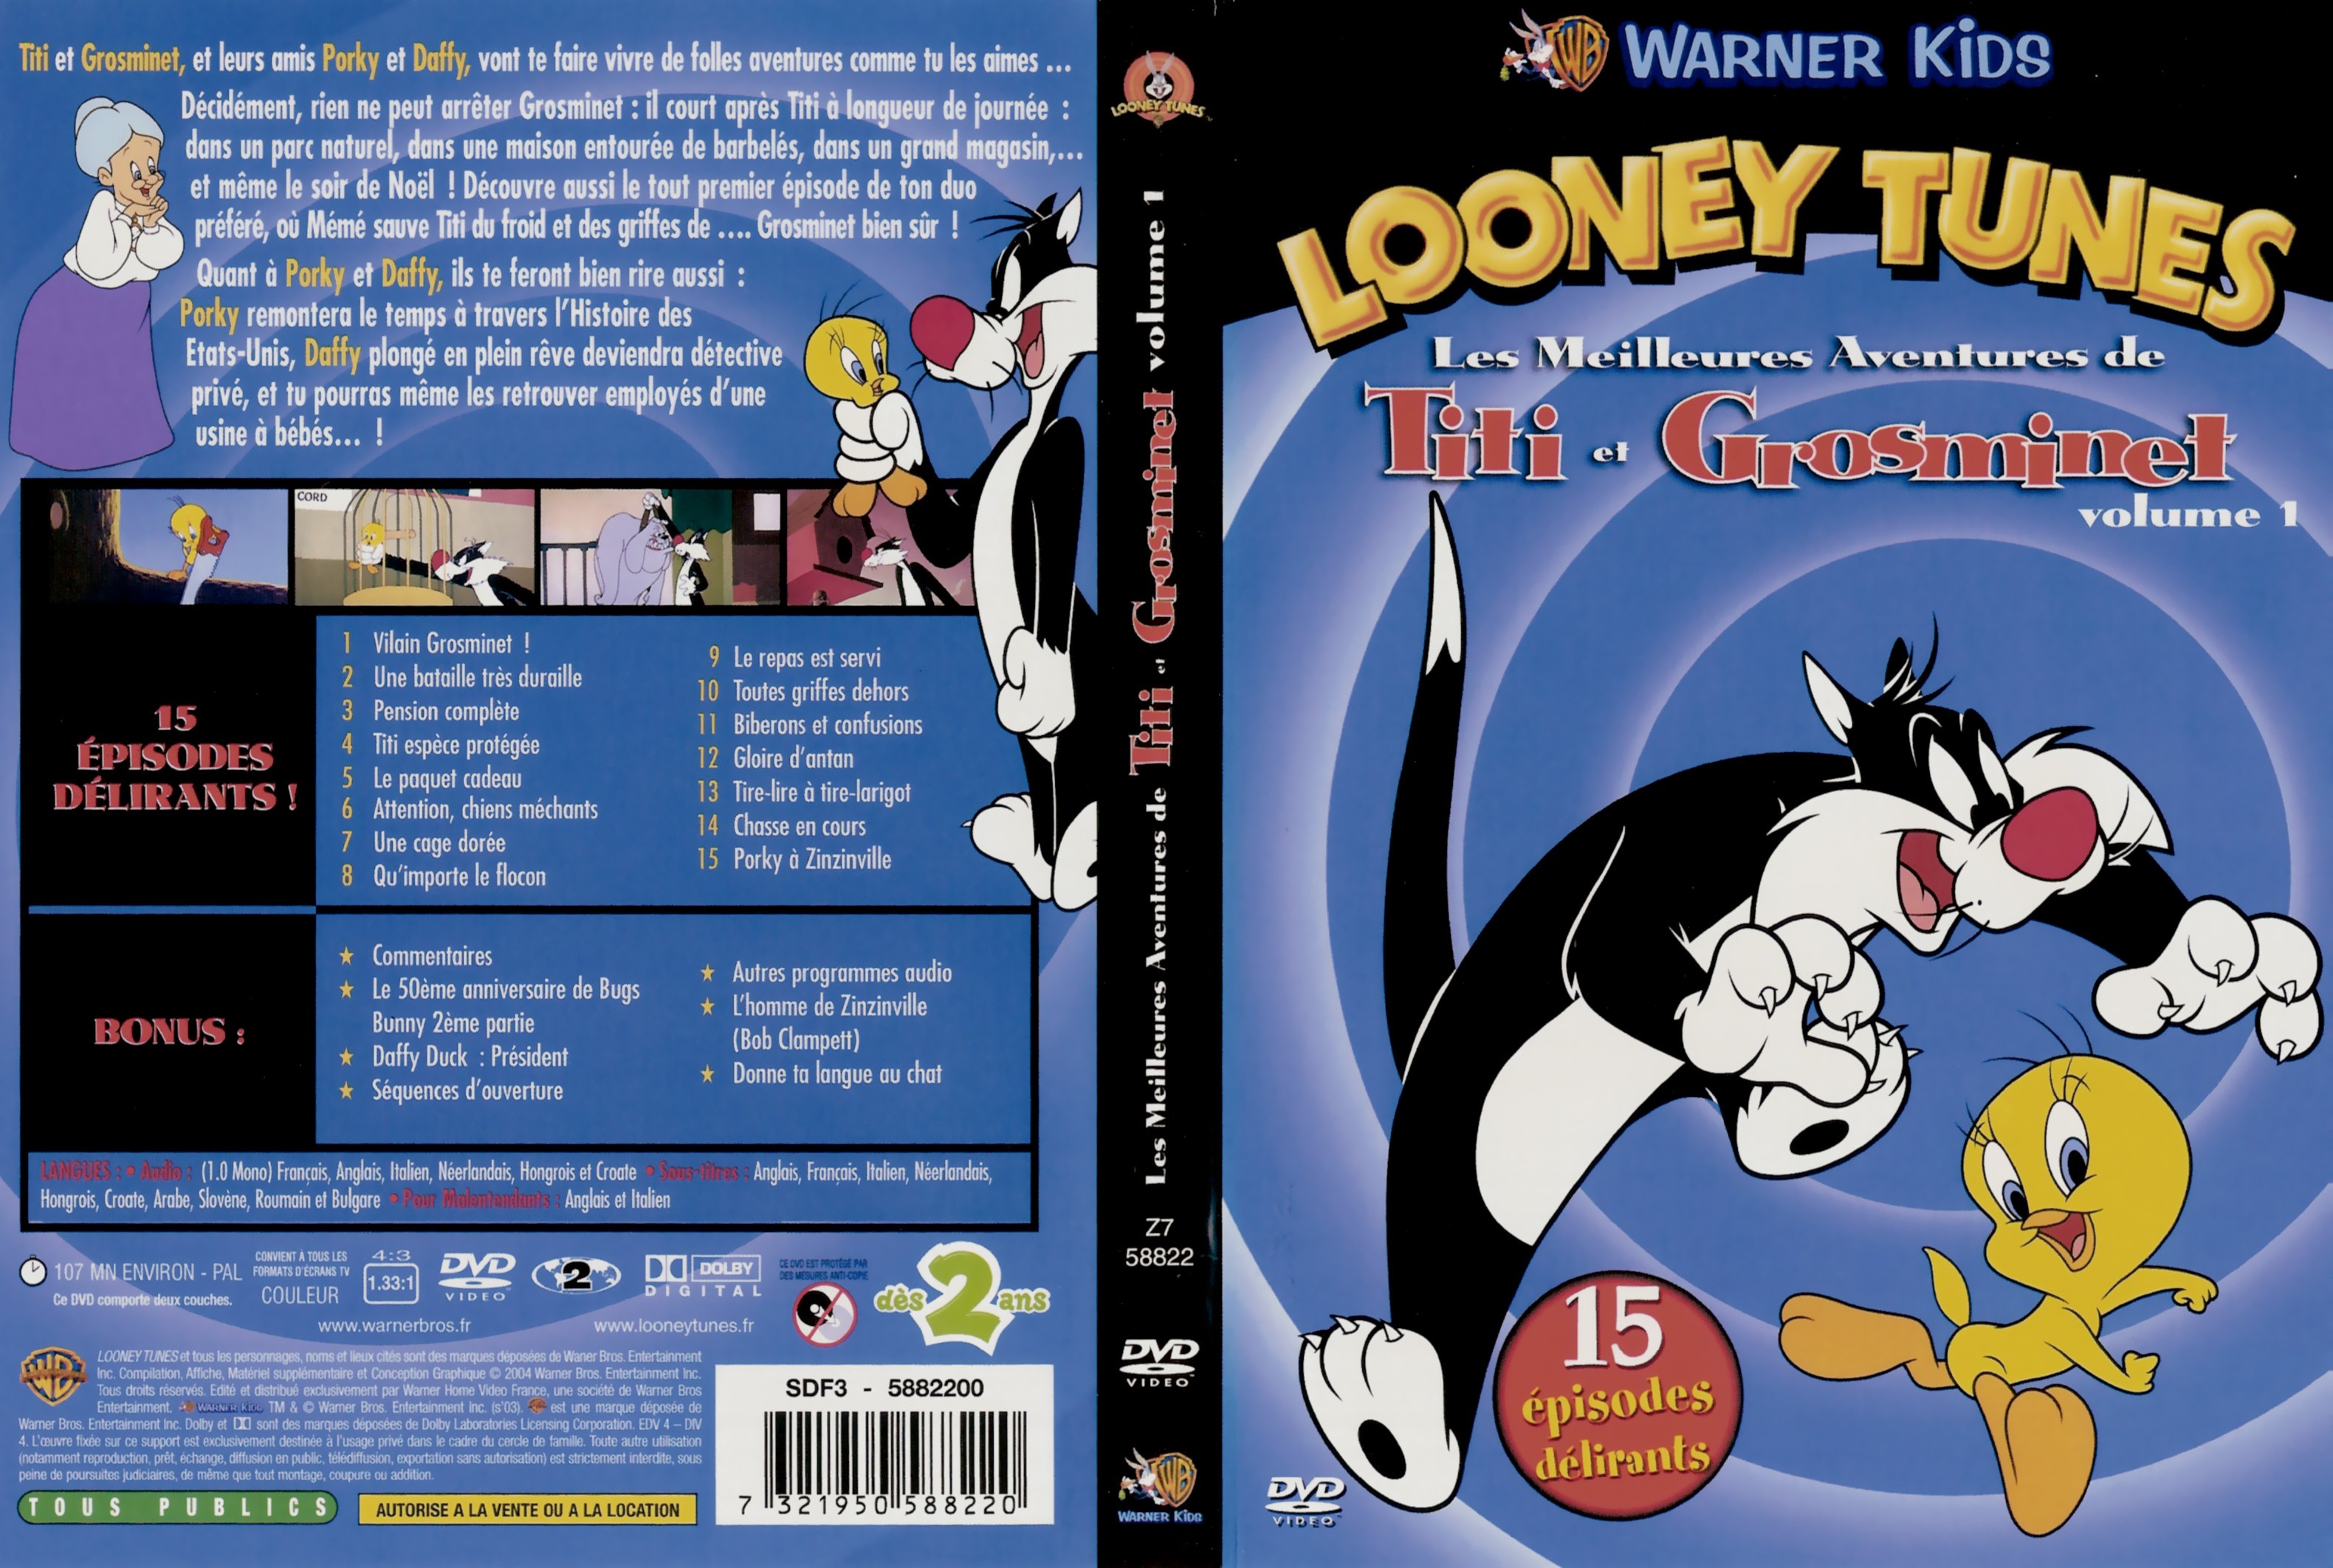 Jaquette DVD Looney Tunes - Les meilleures aventures de Titi et Grosminet - volume 1